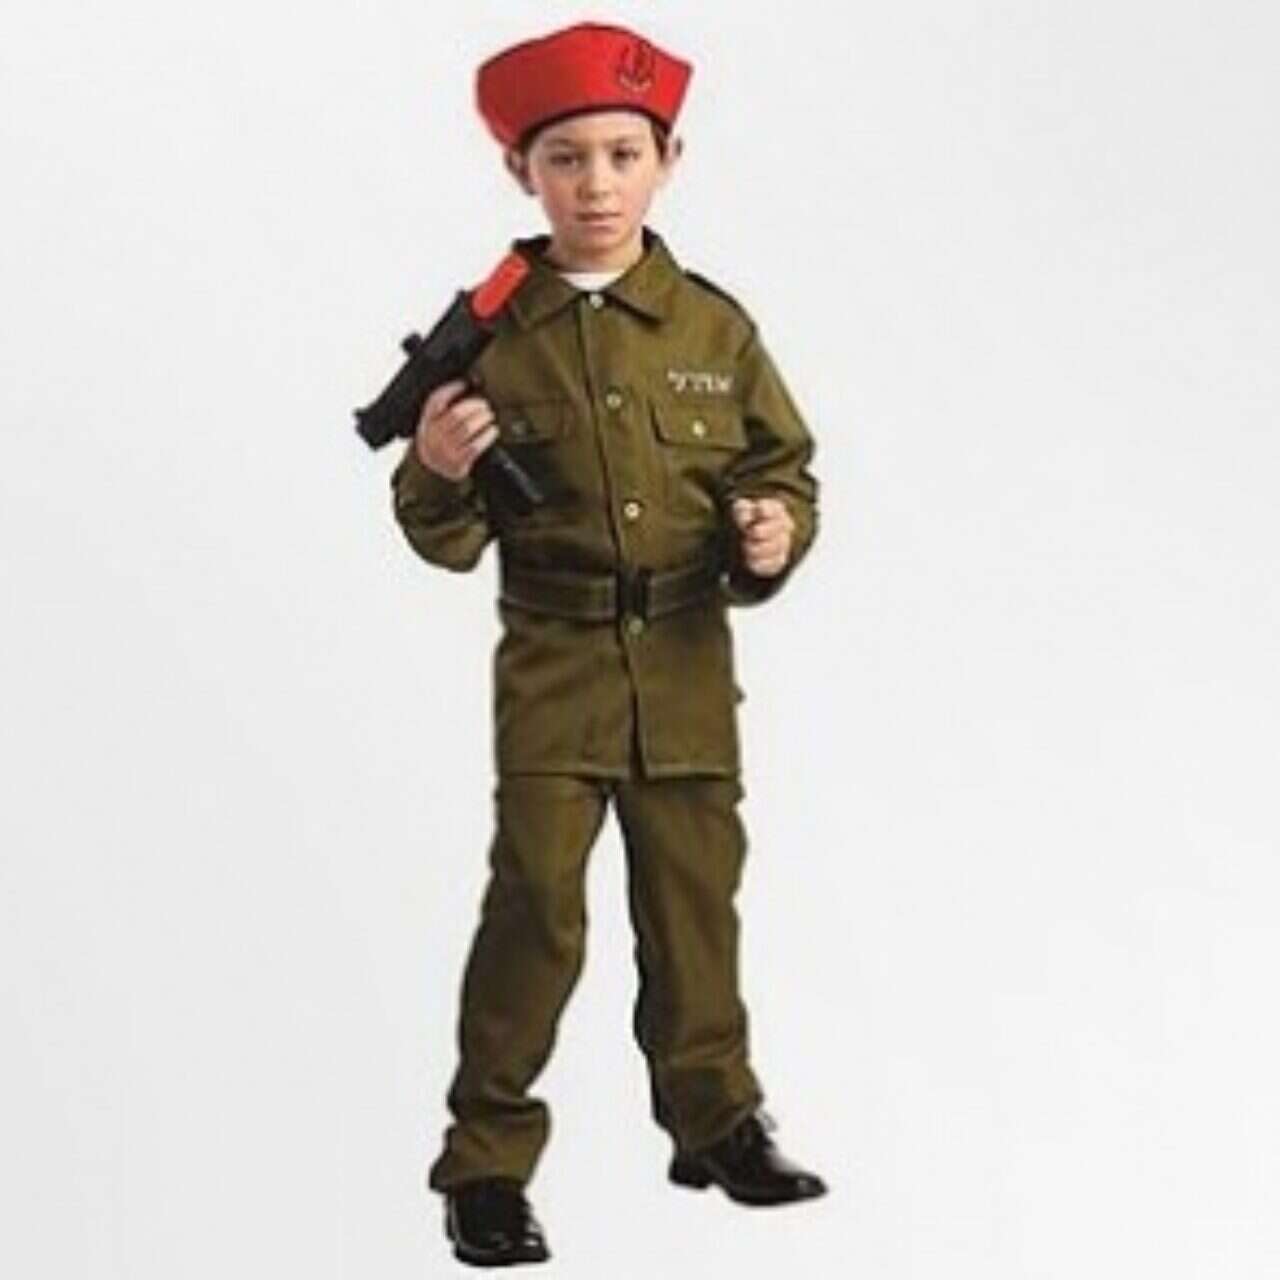 Facing criticism, Walmart drops IDF Halloween costume